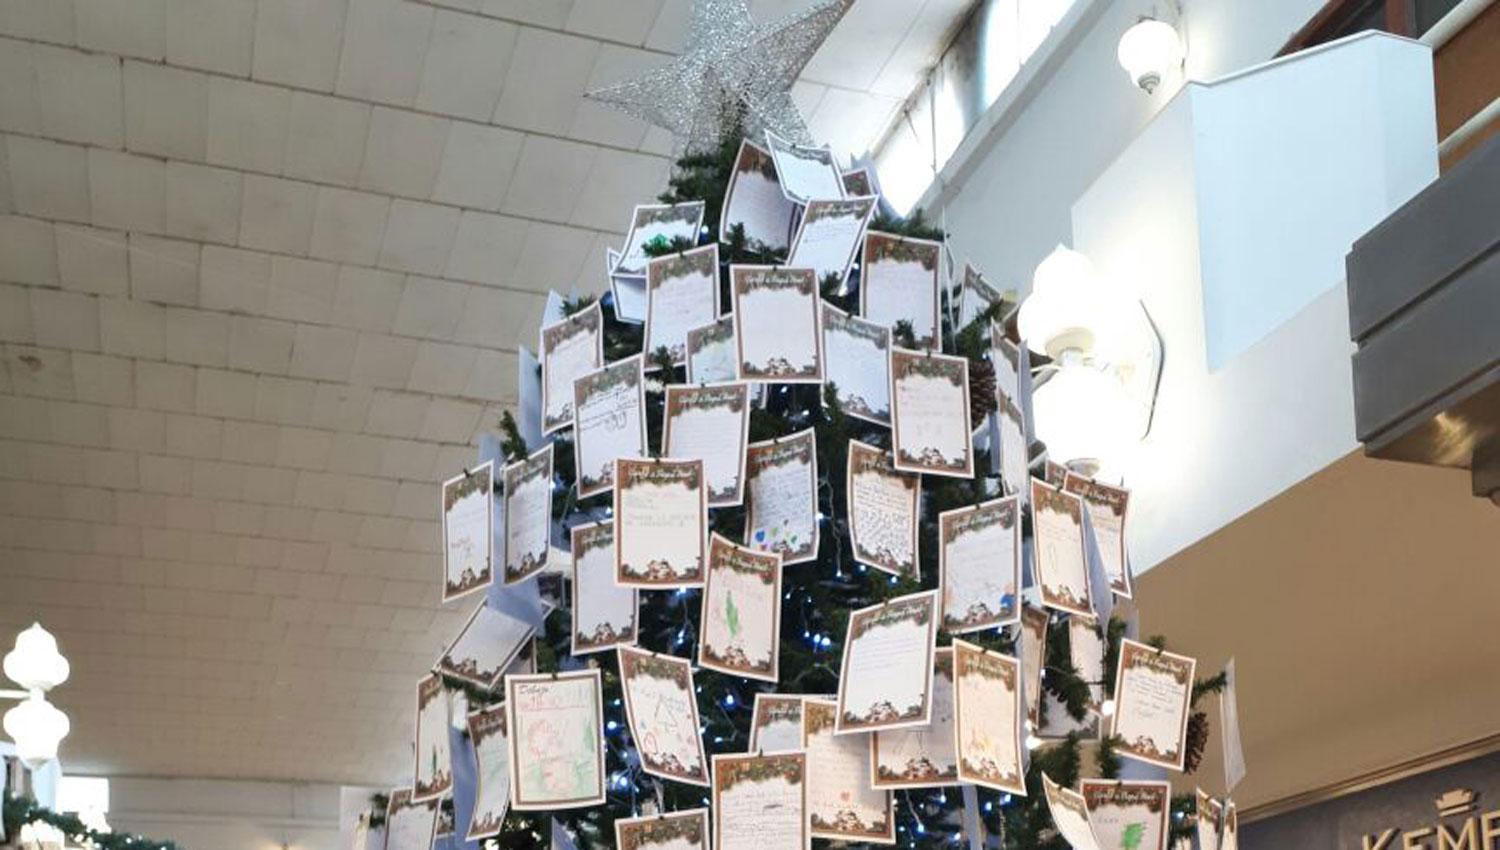 ENORME. El árbol de navidad luce en una galería del microcentro. (FOTO DE MATÍAS QUINTANA)